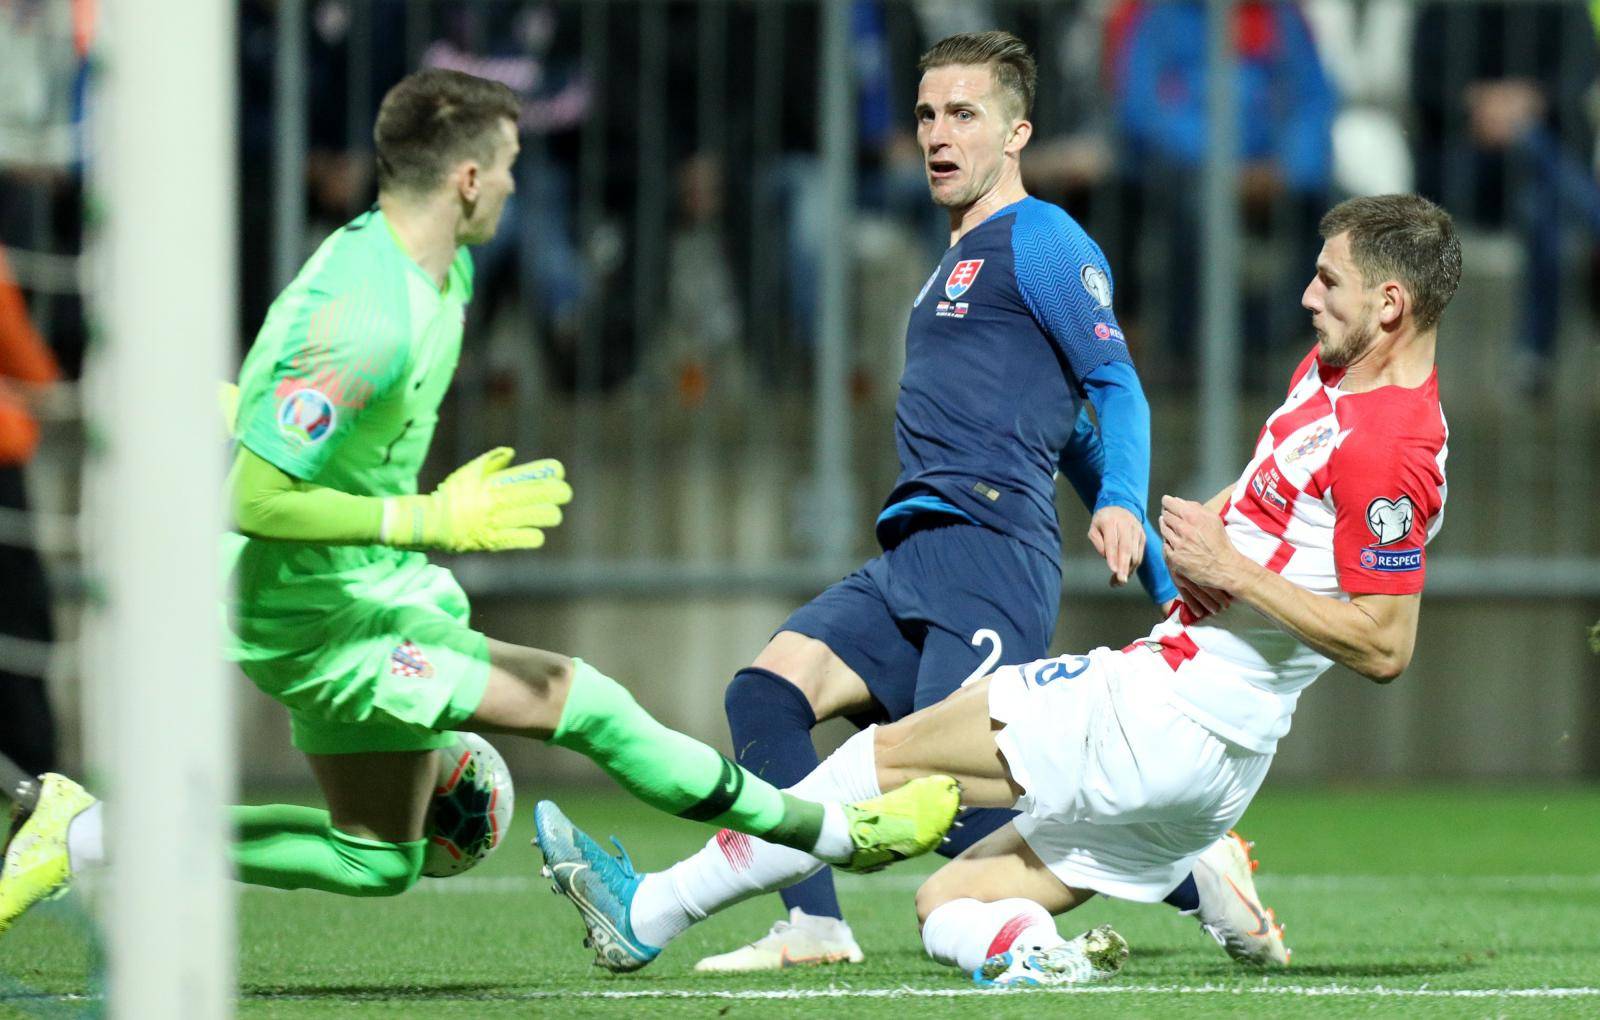 Susret Hrvatske i Slovaèke u kvalifikacijama za Europsko prvenstvo